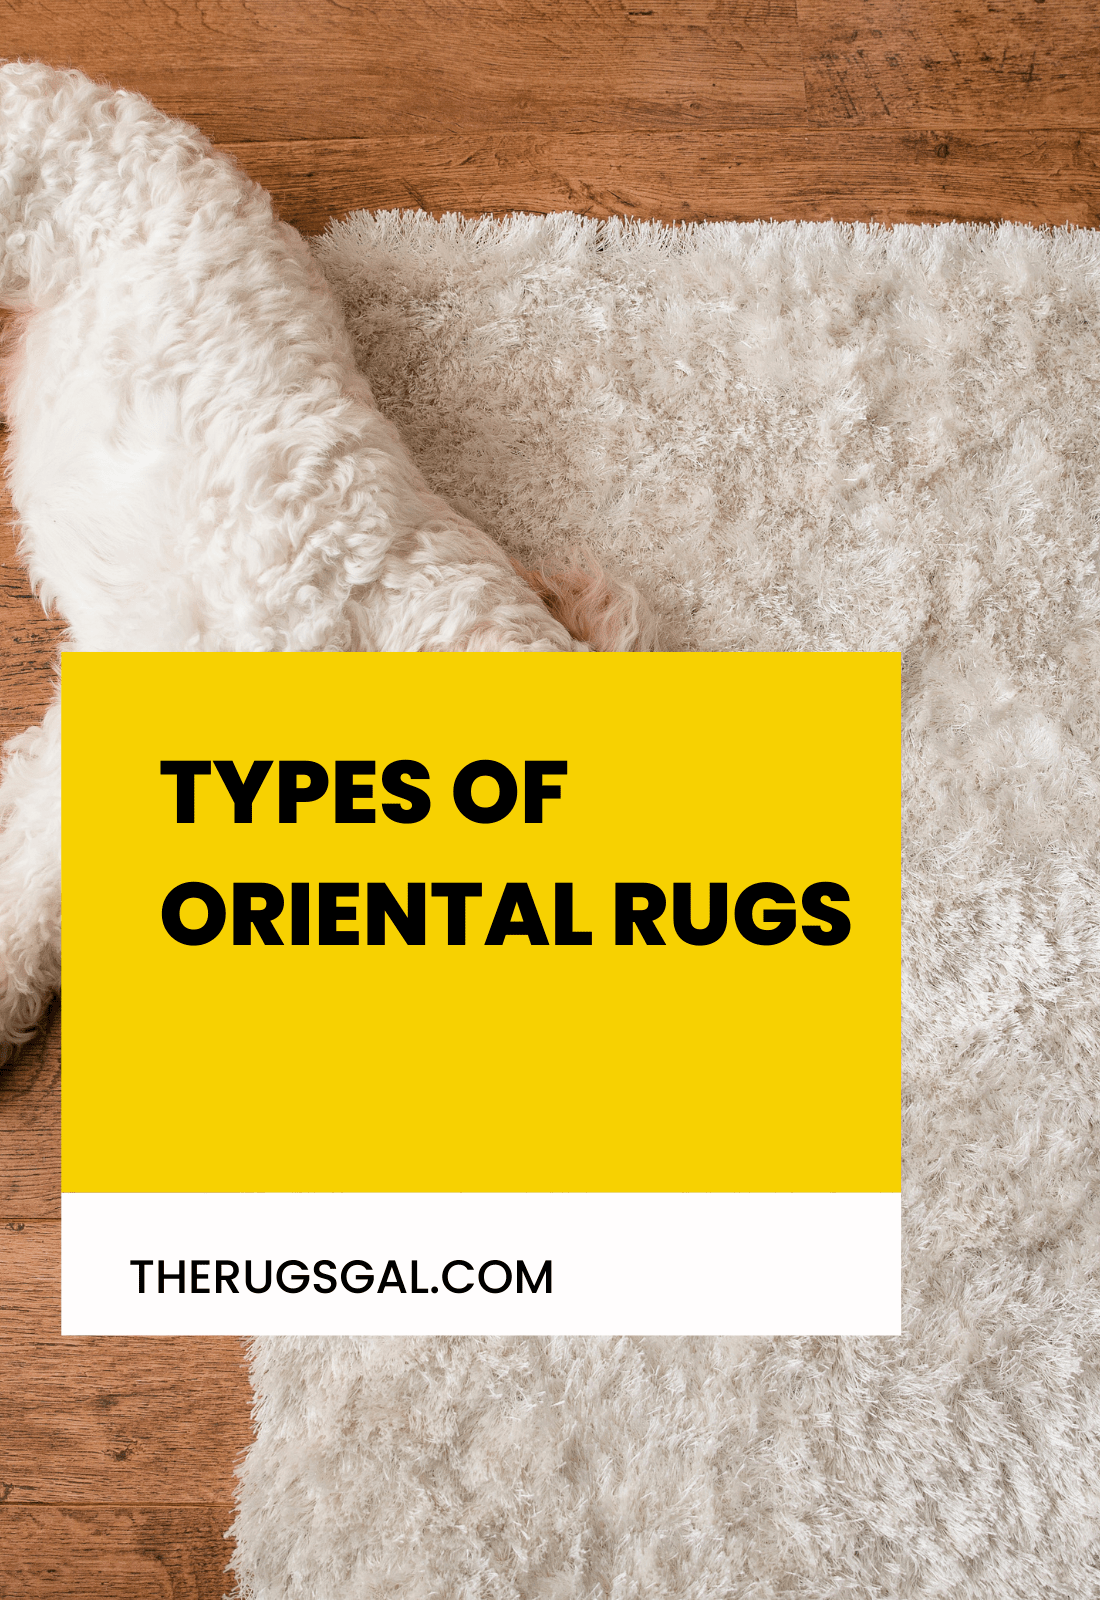 Types of Oriental Rugs